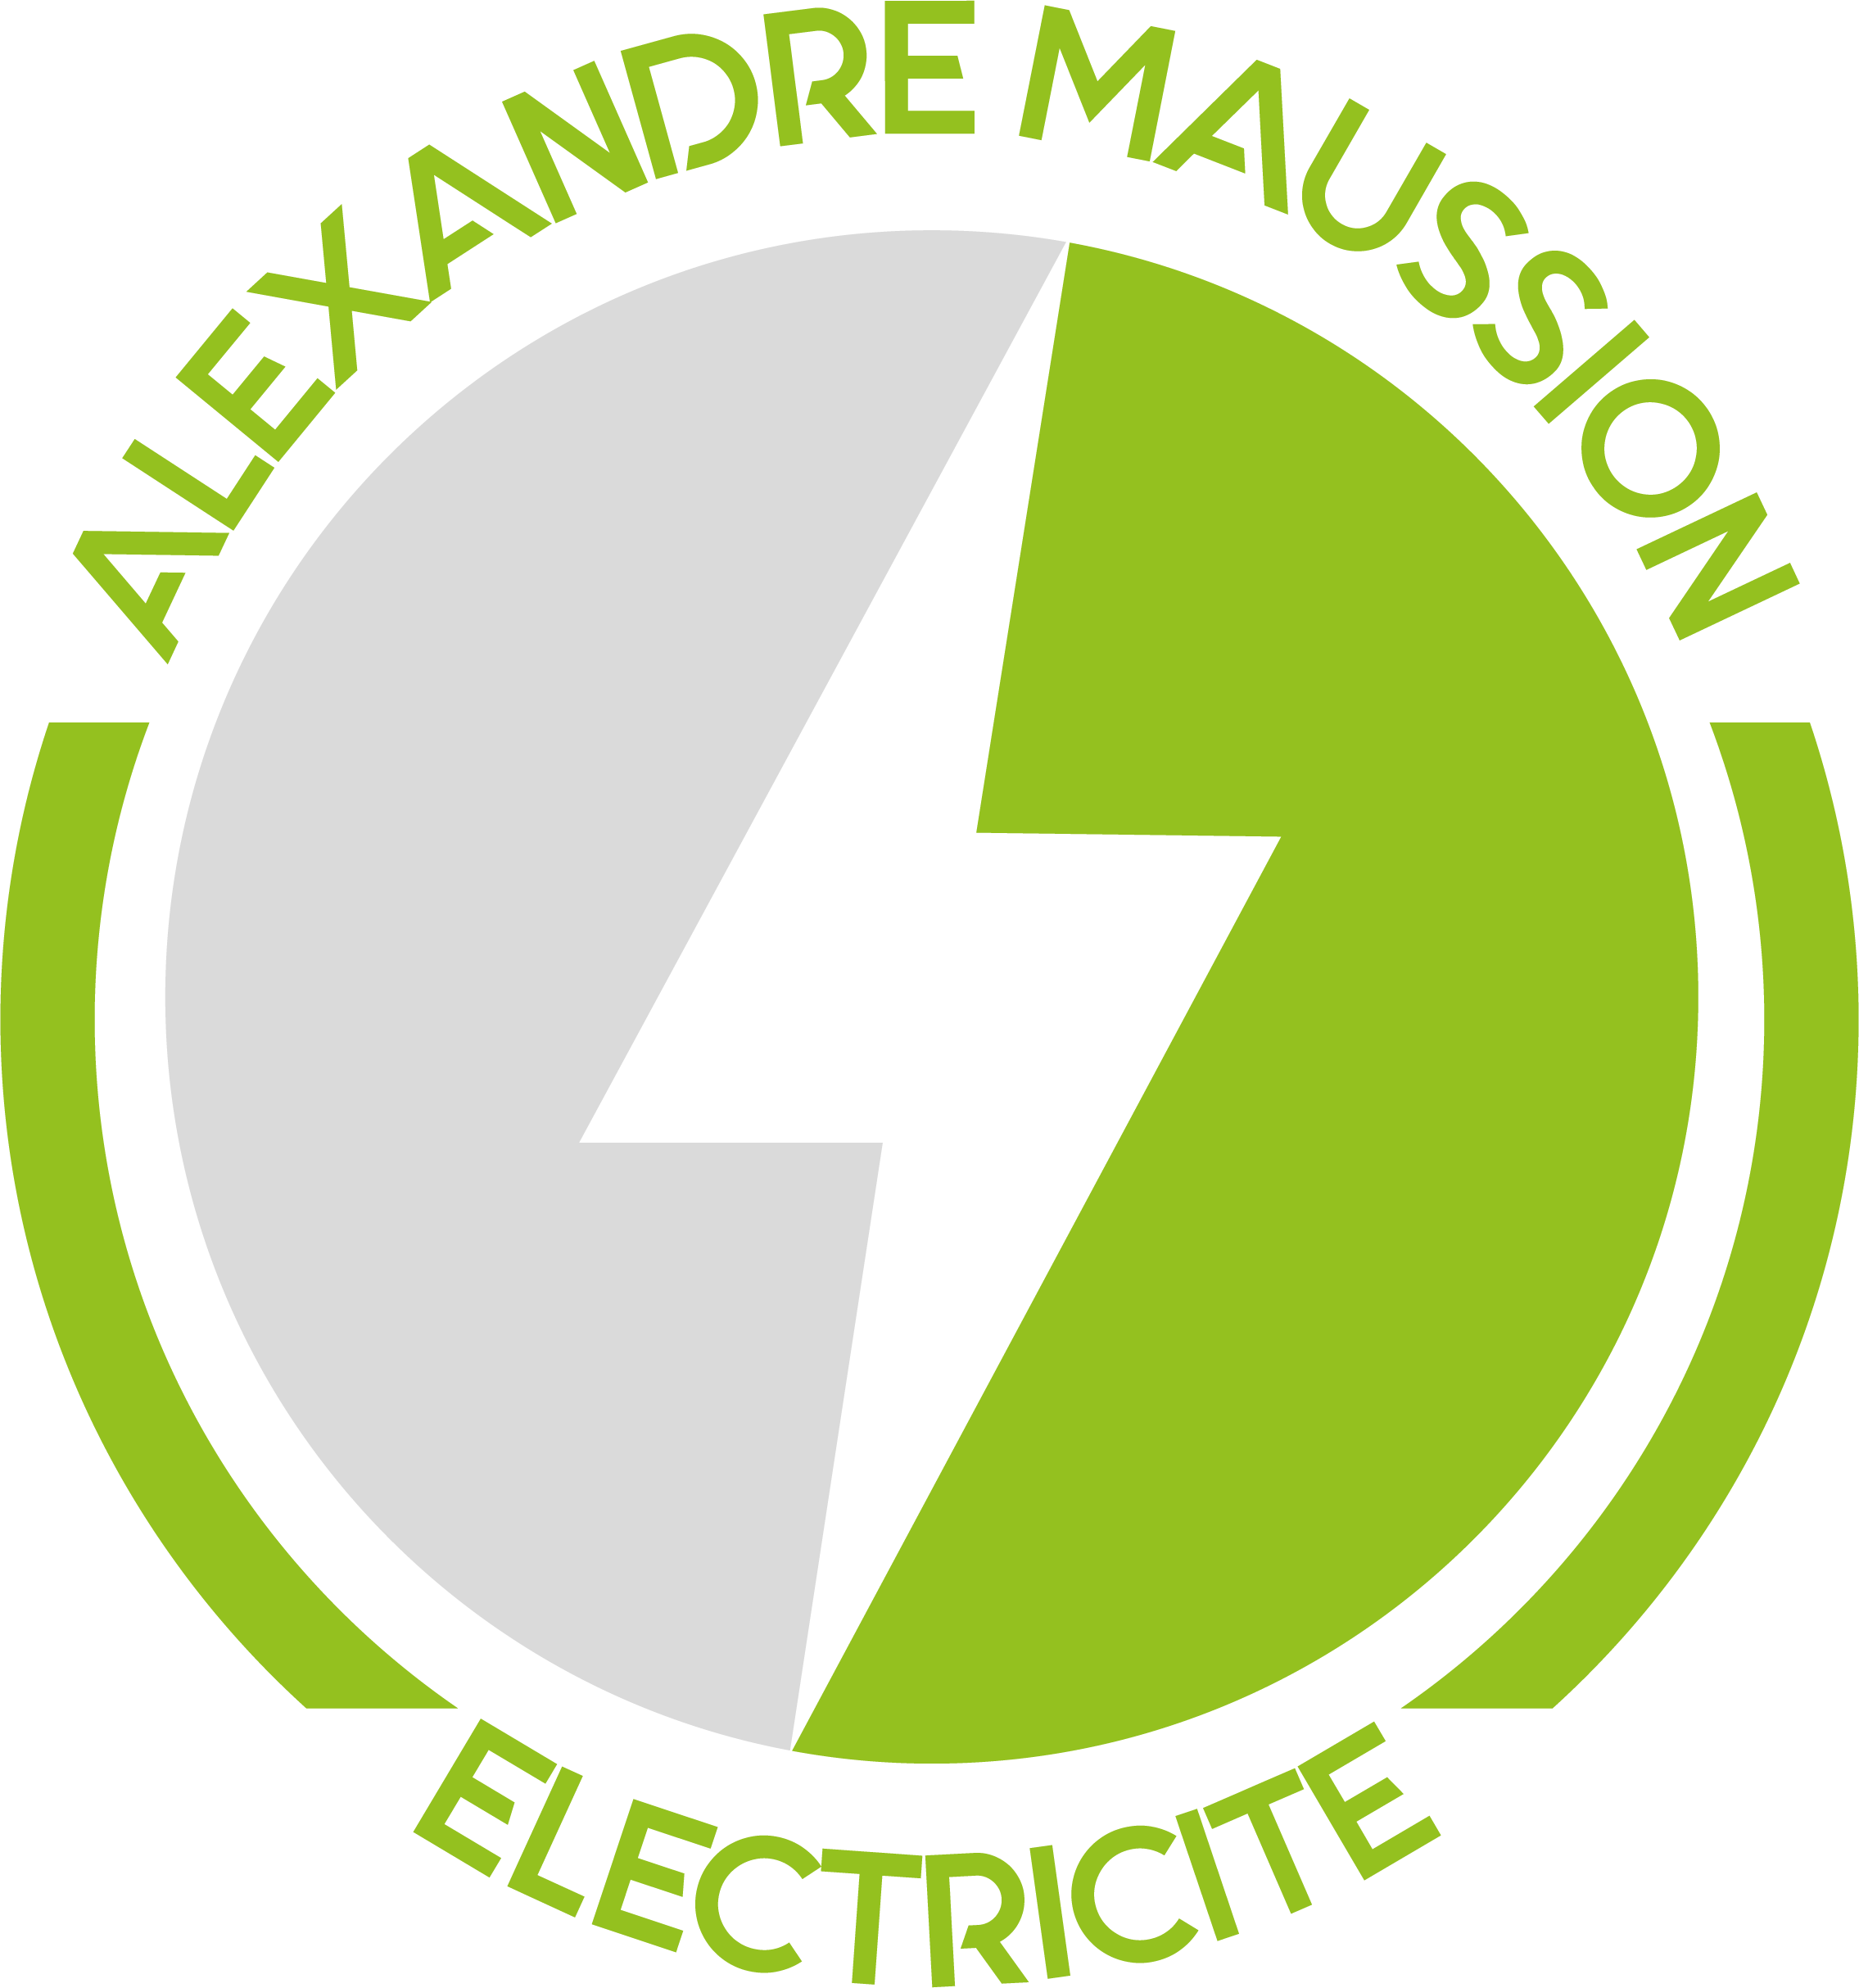 Maussion Electricité - Electricité générale Challans en Vendée